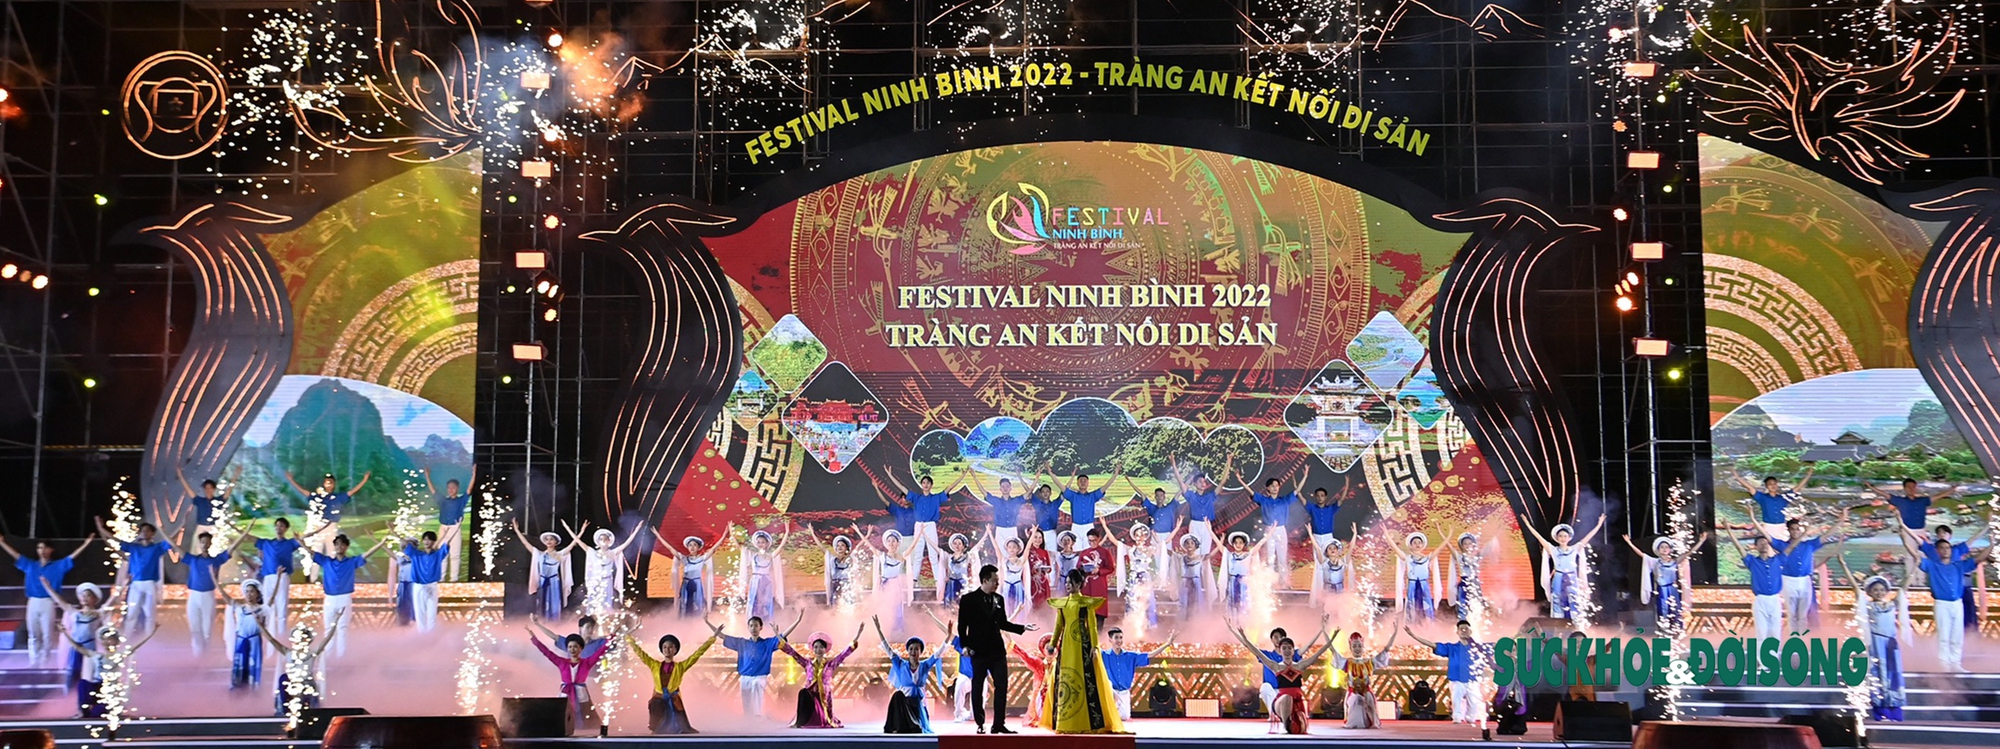 Hoa hậu Du lịch thế giới có mặt trong lễ khai mạc Festival Ninh Binh 2022 - Ảnh 2.